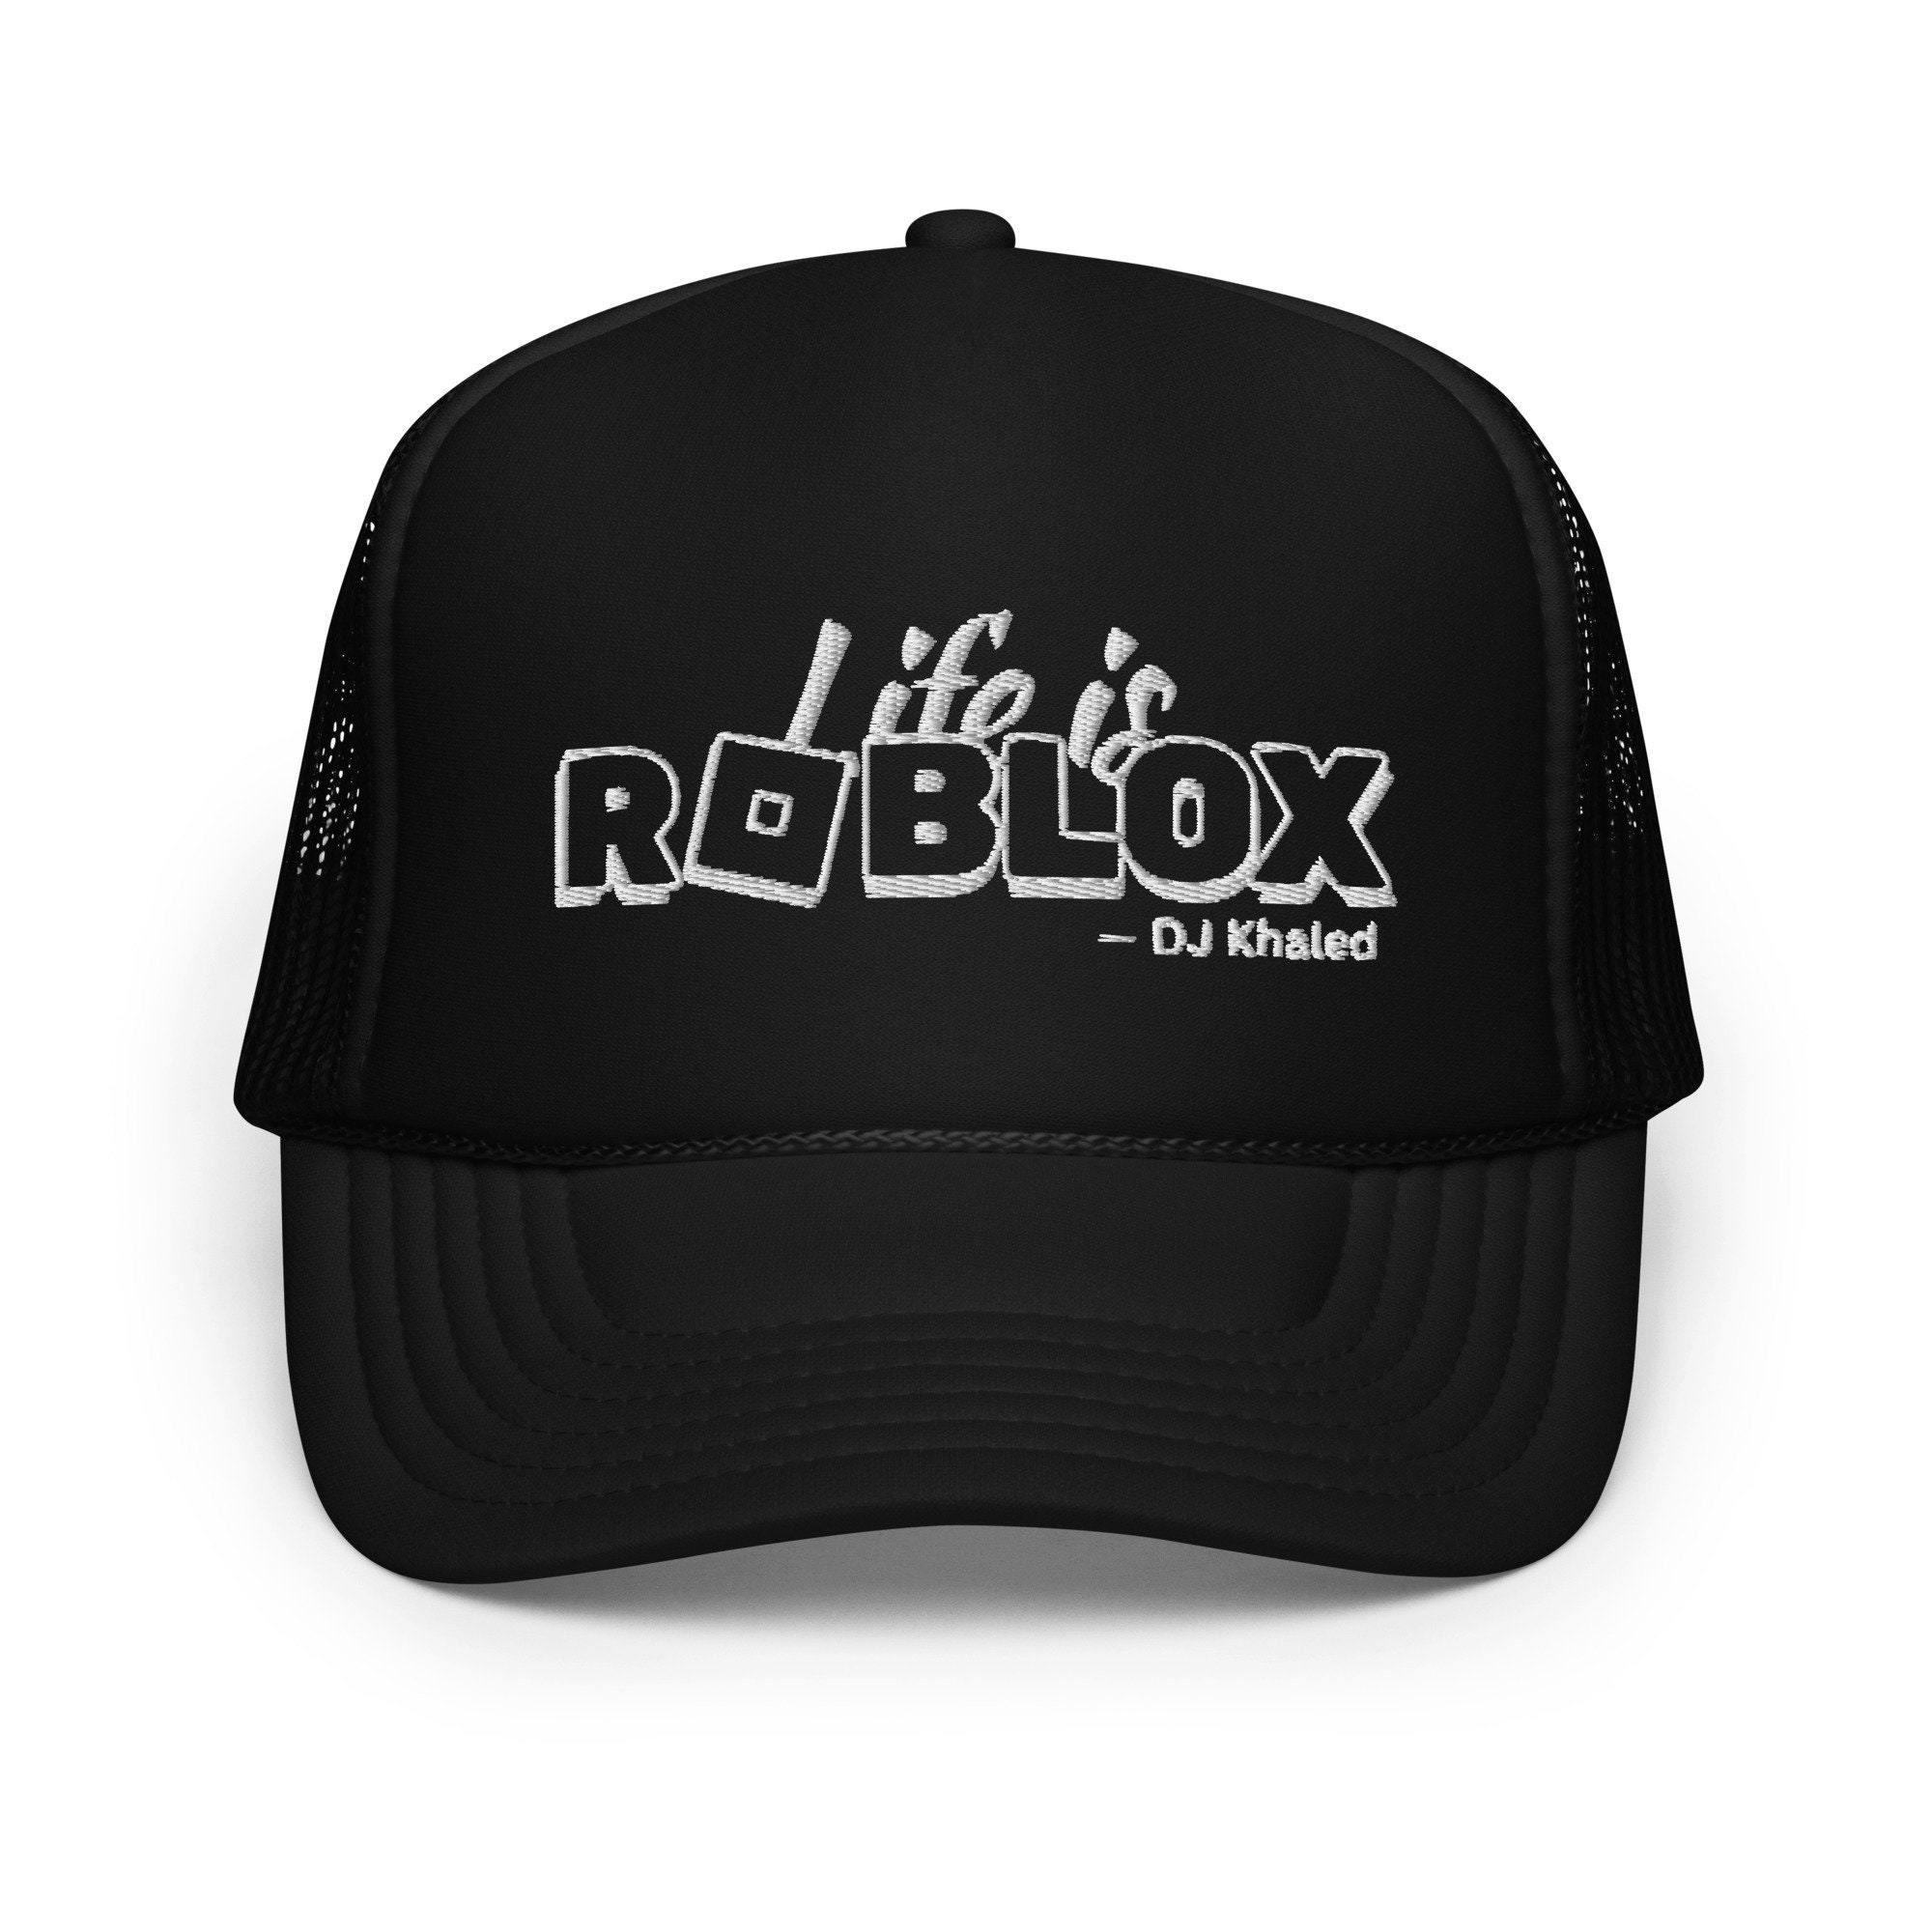 Ro Blox SVG Logotipo De Niña R Para Cortar En Capas 